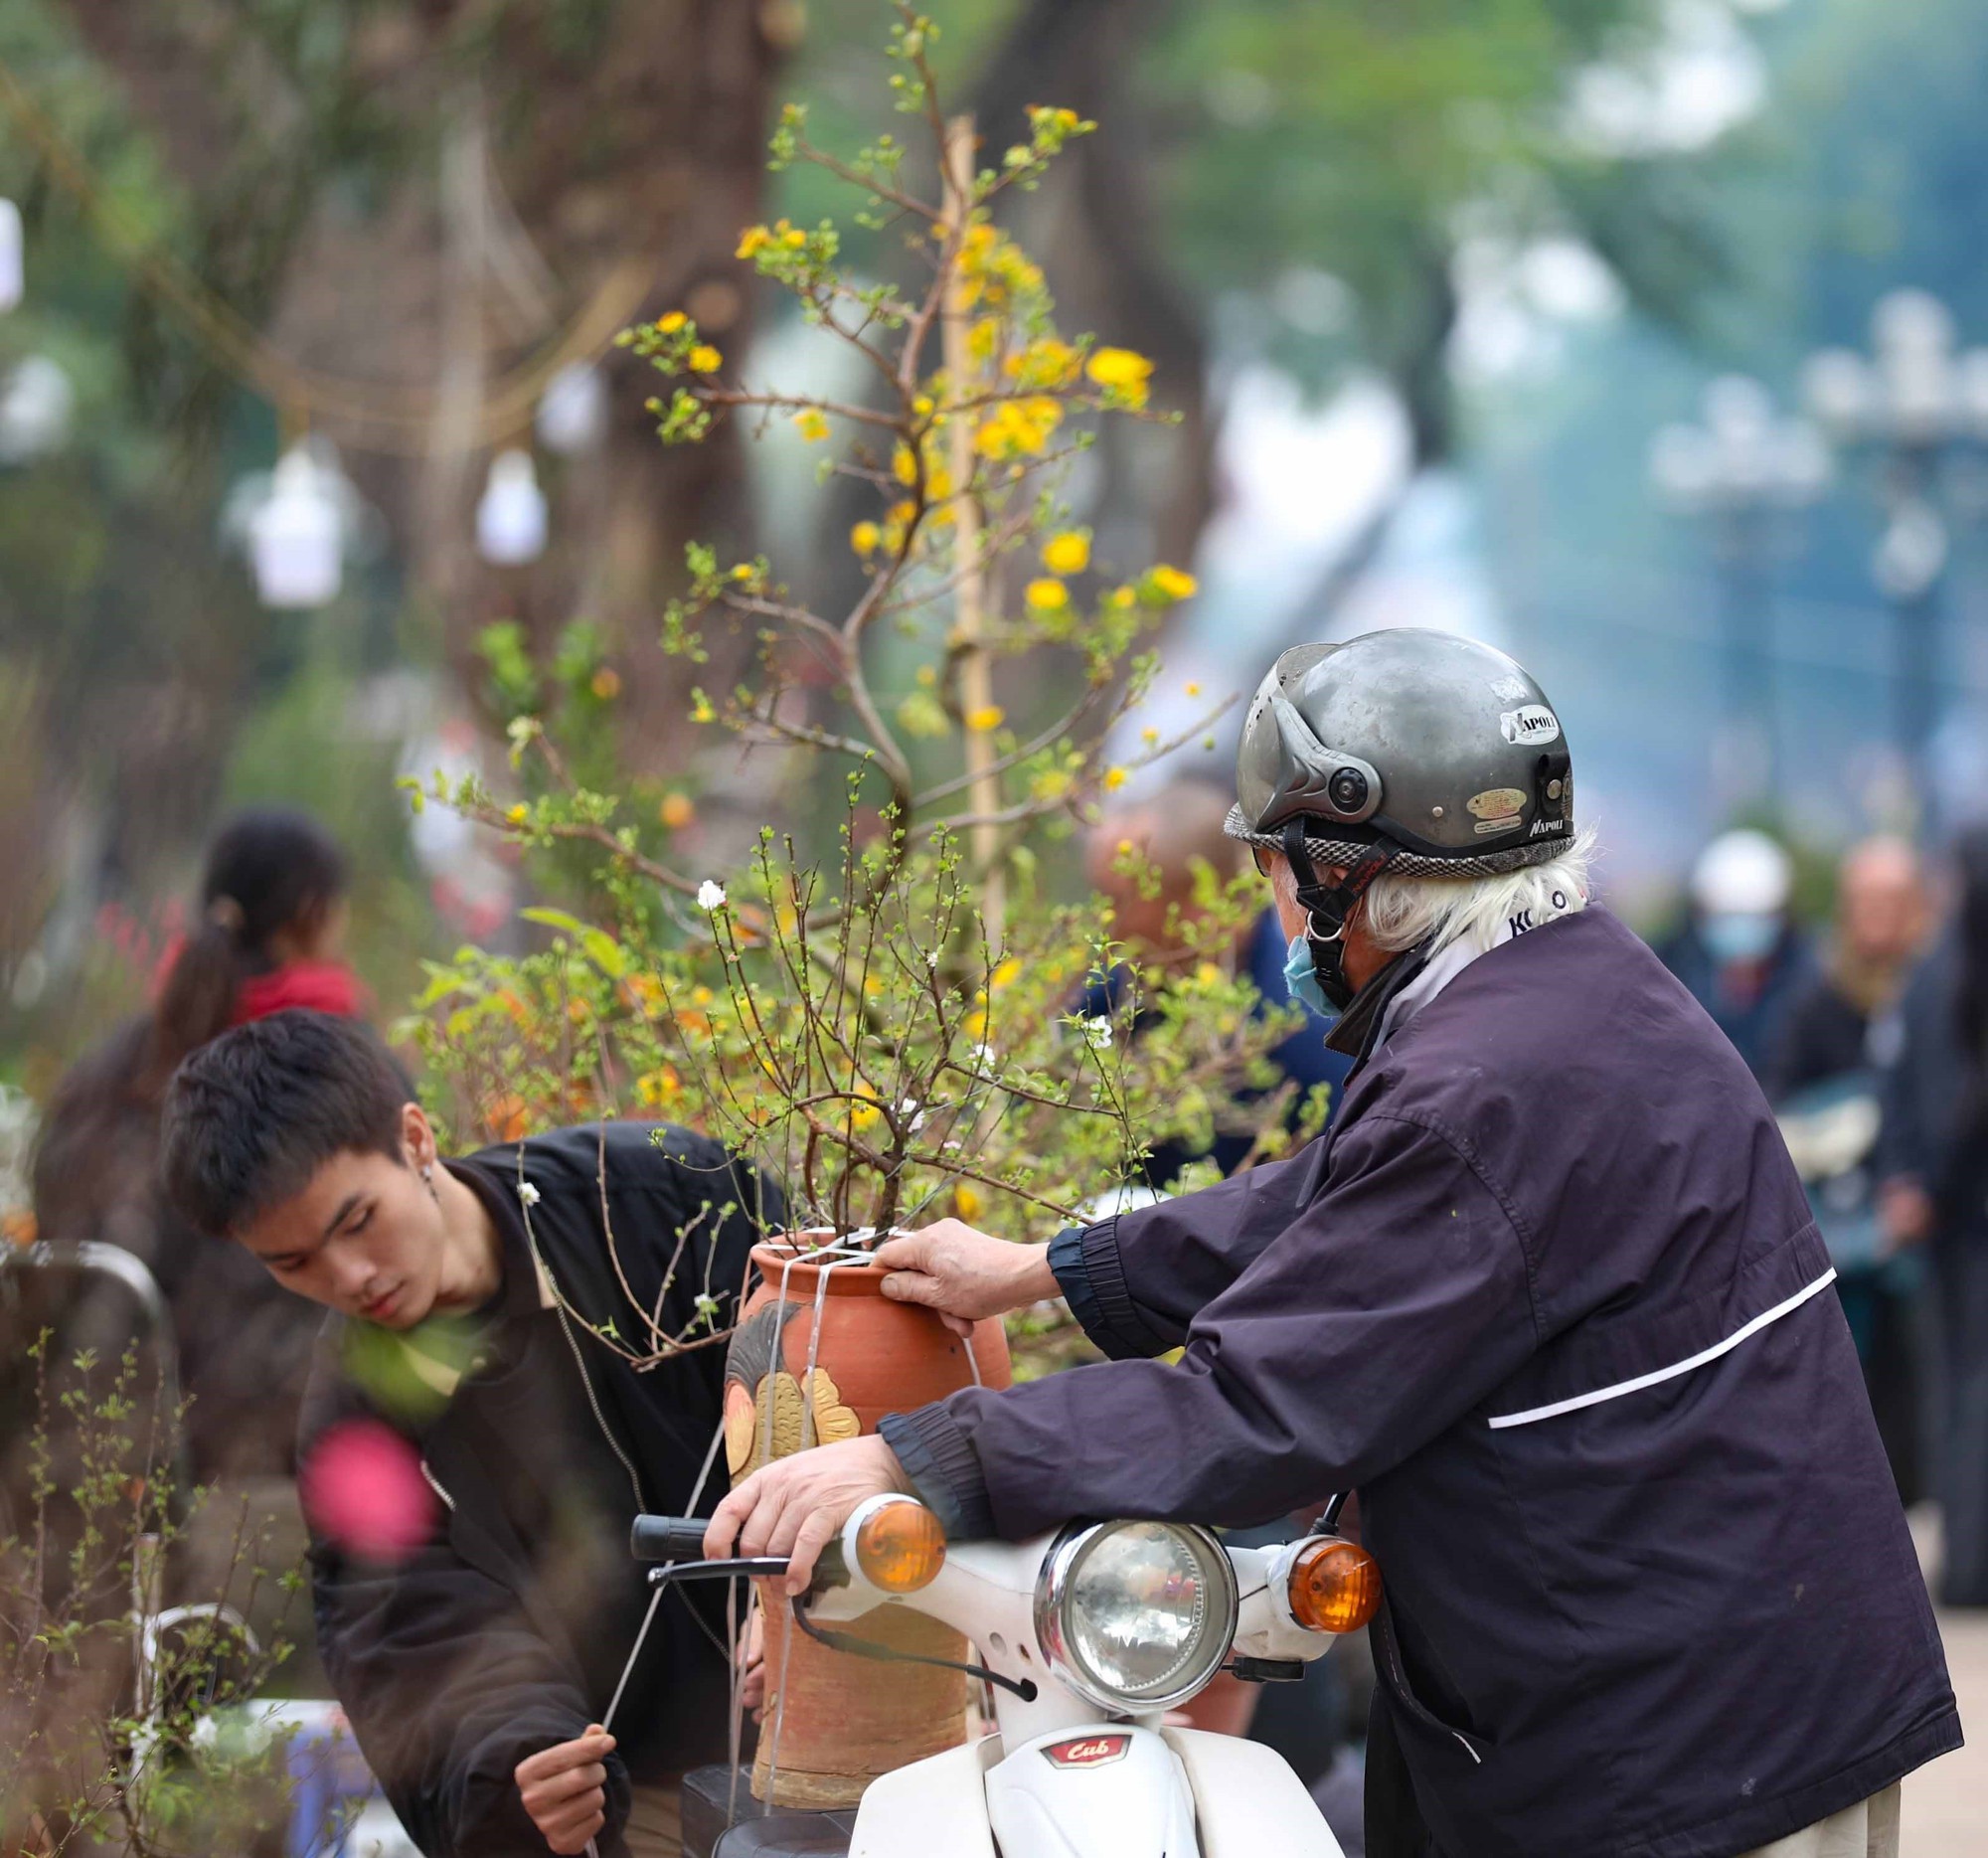 Hình ảnh chợ hoa Công viên Thống Nhất nhộn nhịp giáp Tết  - Ảnh 9.